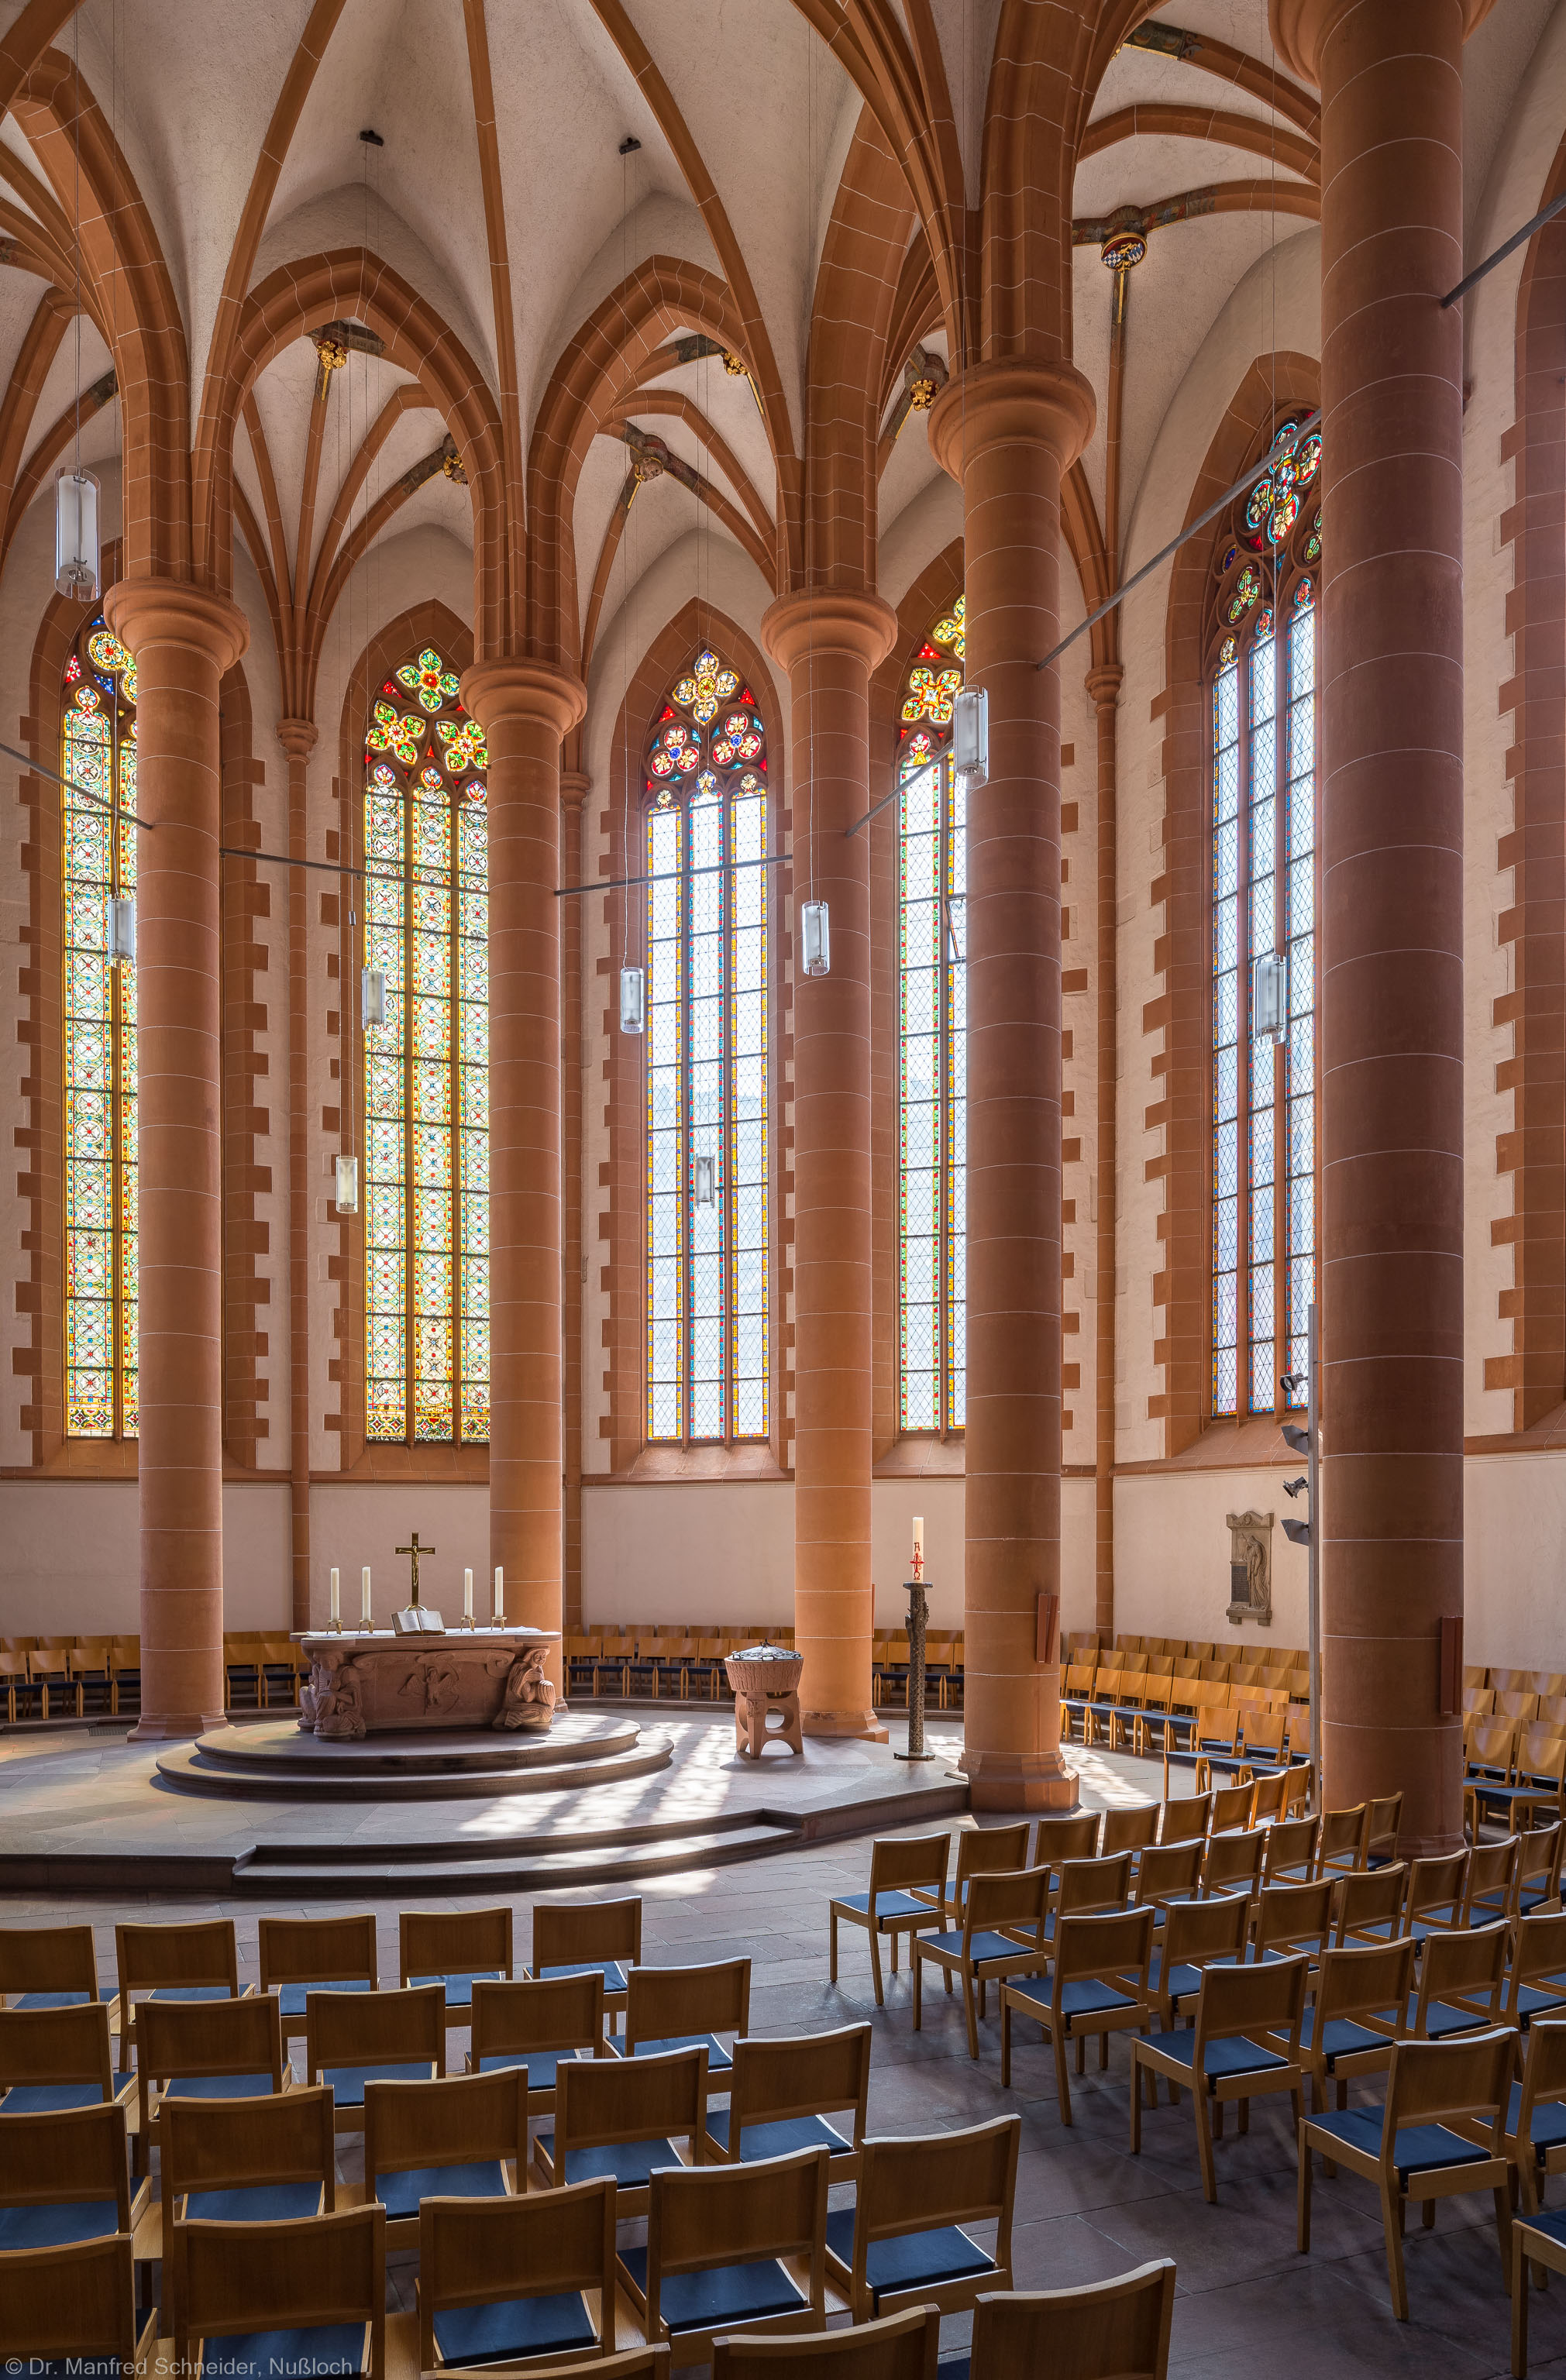 Heidelberg - Heiliggeistkirche - Chor - Blick in den Chor nach Südosten mit Säulen, Gewölbe und Altar (aufgenommen im Juli 2015, am späten Vormittag)